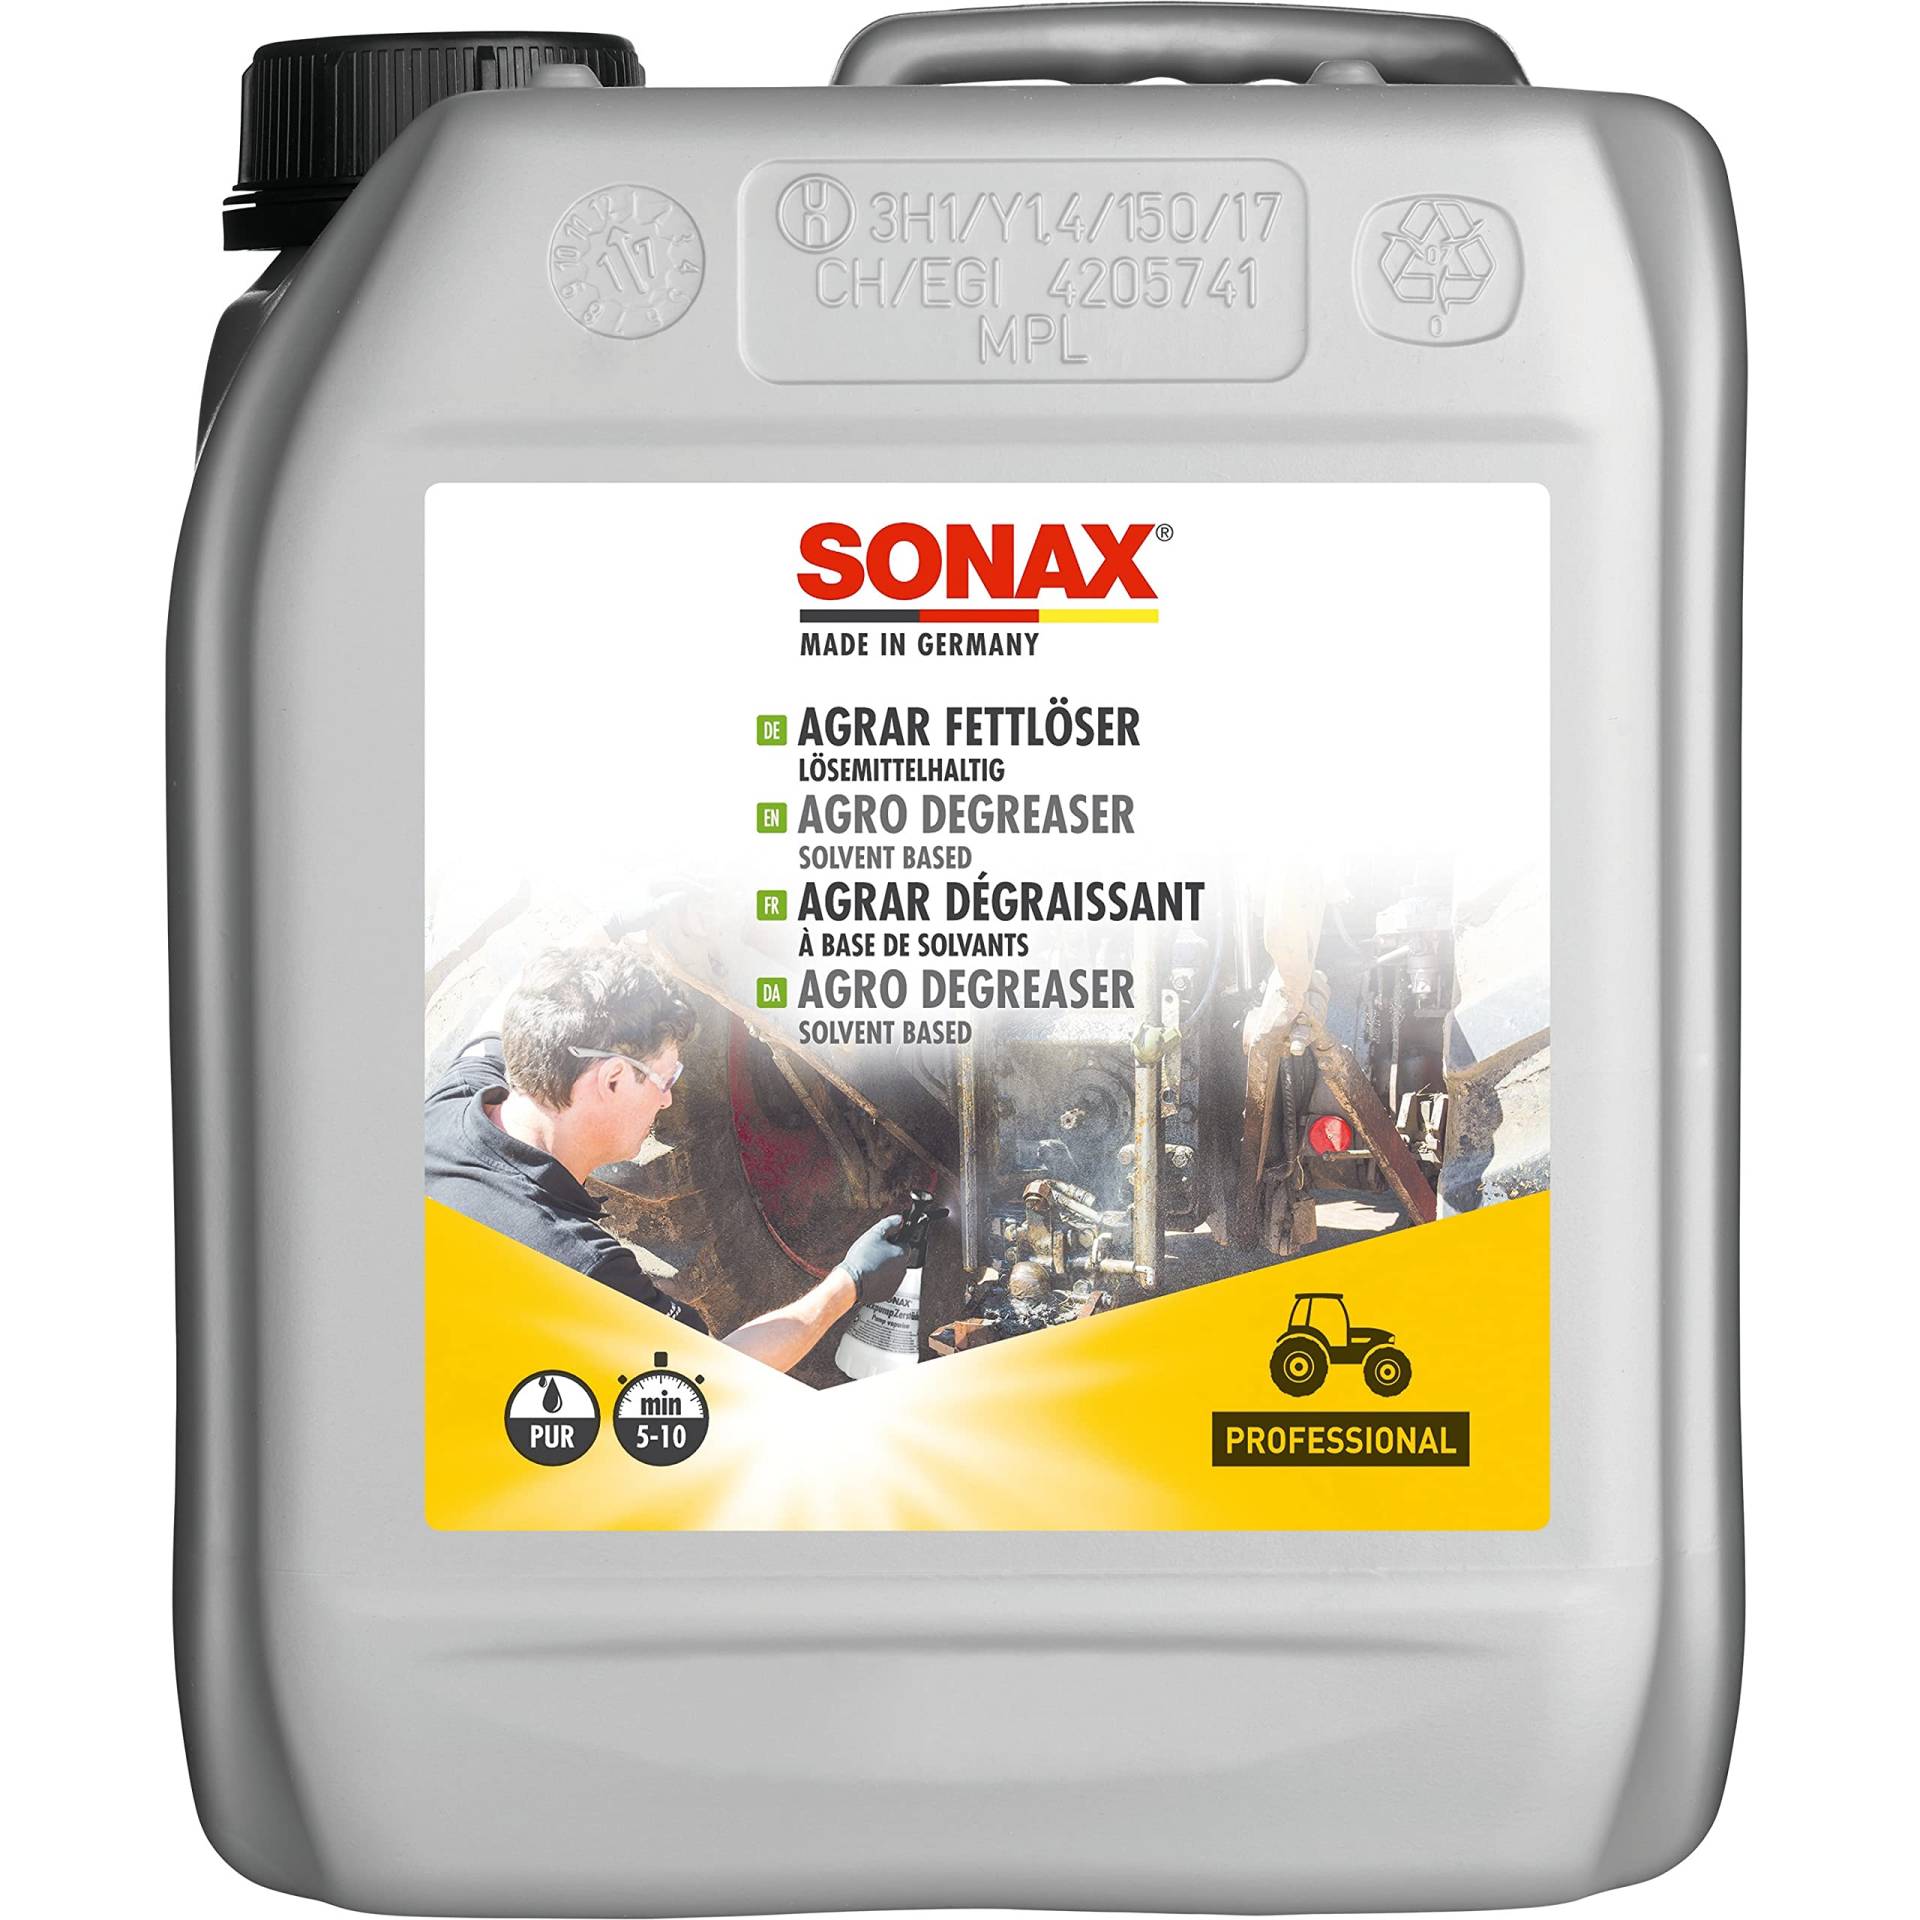 SONAX AGRAR FettLöser lösemittelhaltig (5 Liter) nichtwassermischbarer Lösemittelreiniger zu Reinigung von Öl- & Fettverschmutzungen, Art-Nr. 07425000 von SONAX